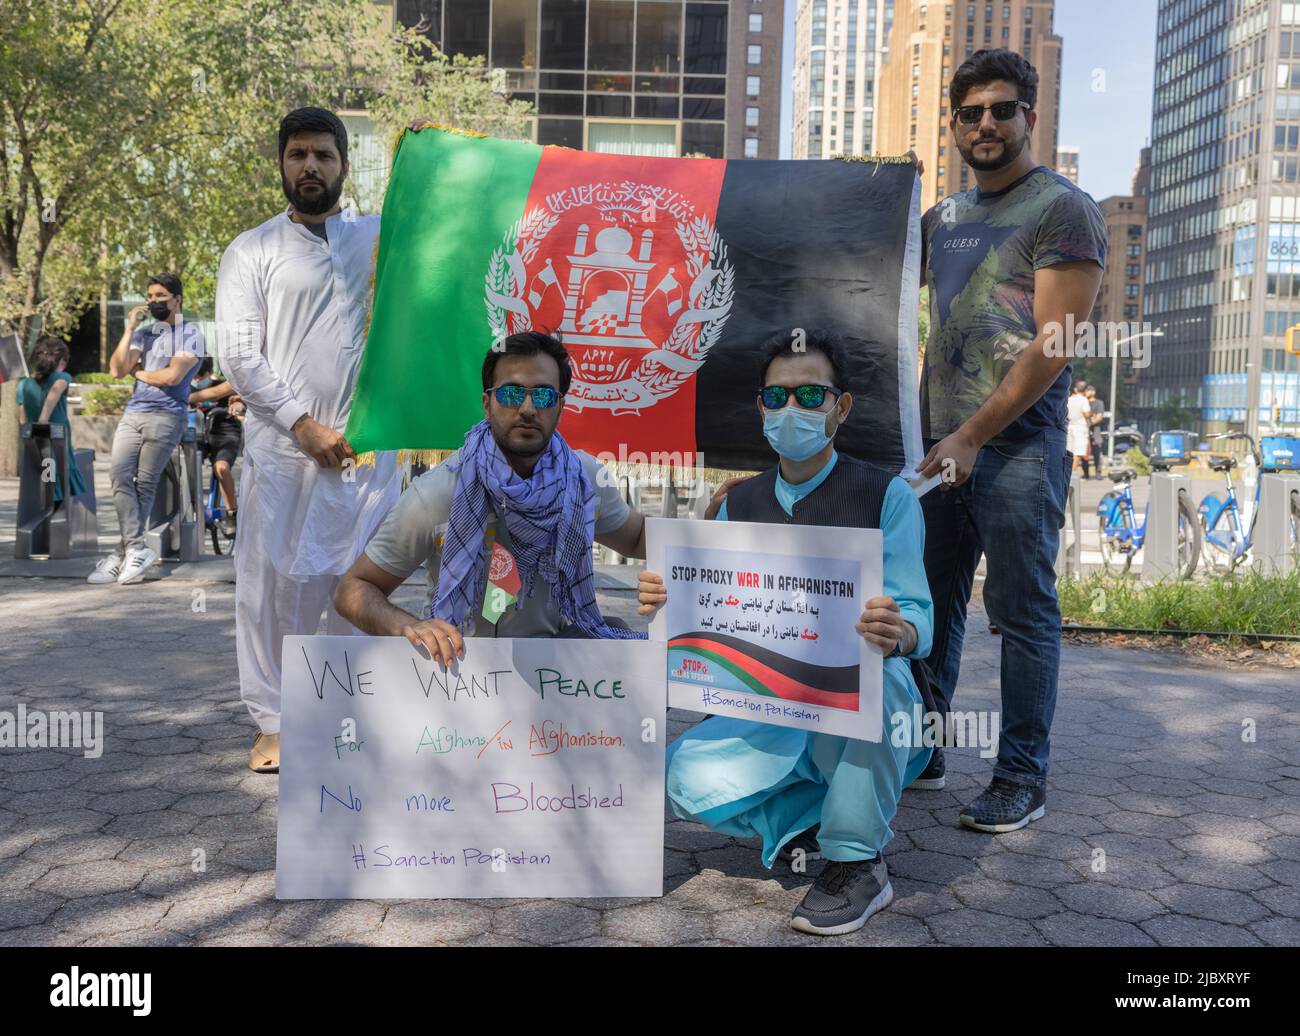 NEW YORK, N.Y. – 15 agosto 2021: I manifestanti si sono riuniti presso la sede centrale delle Nazioni Unite, secondo le relazioni che i combattenti talebani erano entrati a Kabul. Foto Stock